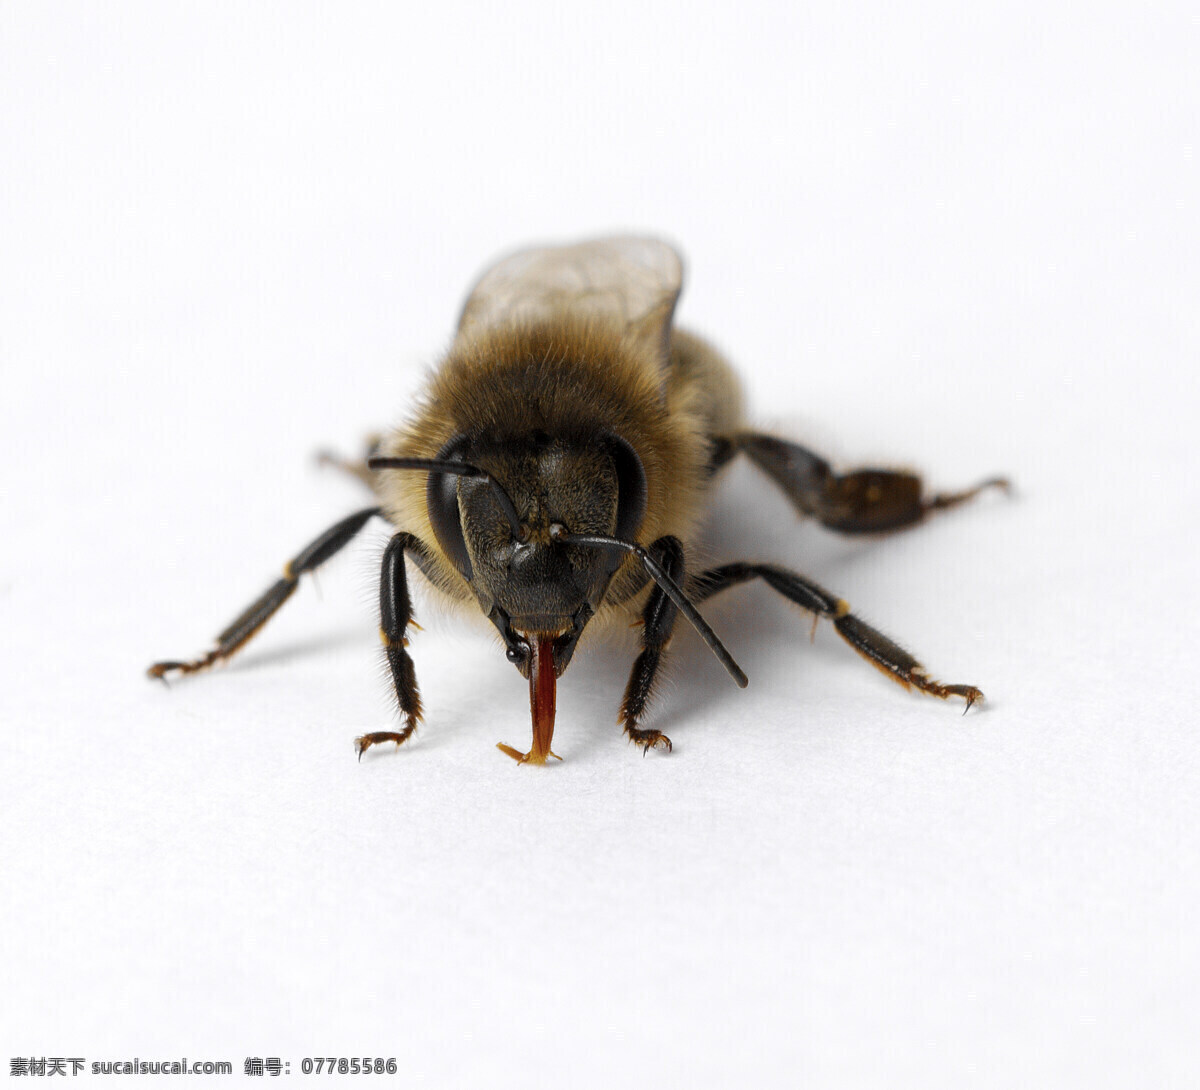 蜜蜂 群居昆蟲 蜂后 工蜂 雄蜂 昆虫 生物世界 白色